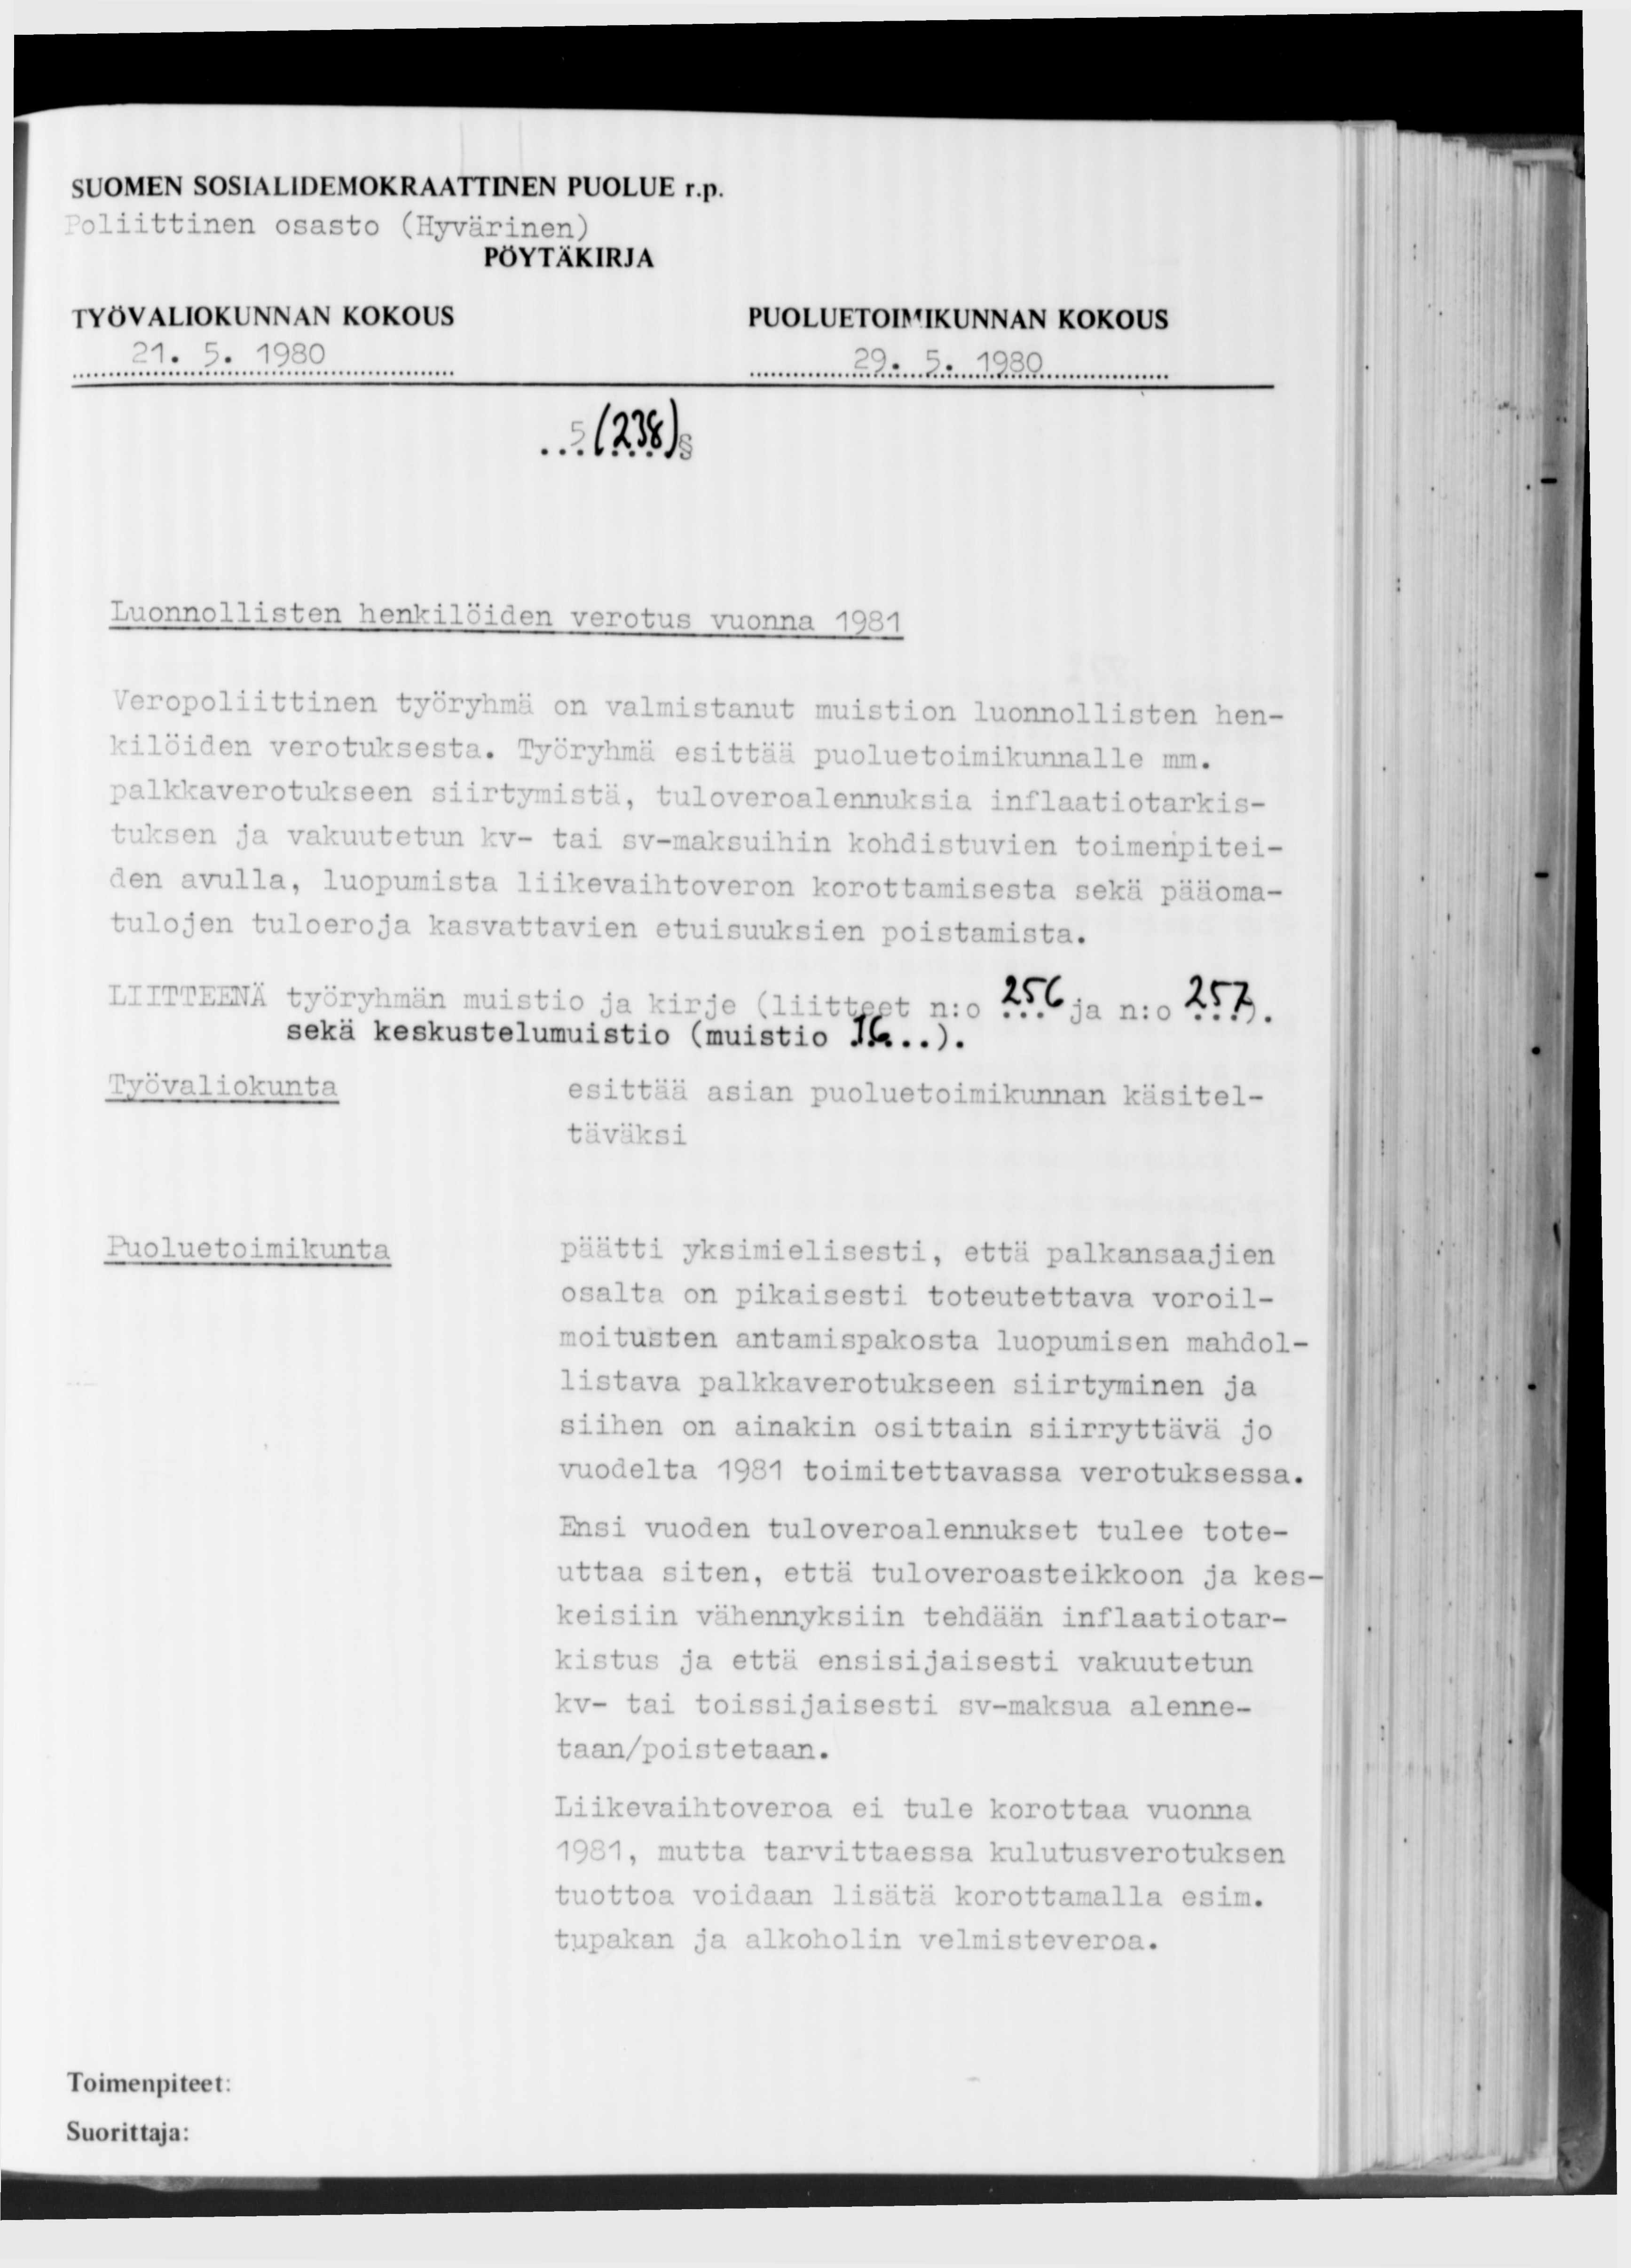 SUOMEN SOSIALIDEMOKRAATTINEN PUOLUE r.p oliittinen osasto (Hyvärinen) 21. 5. 1980.